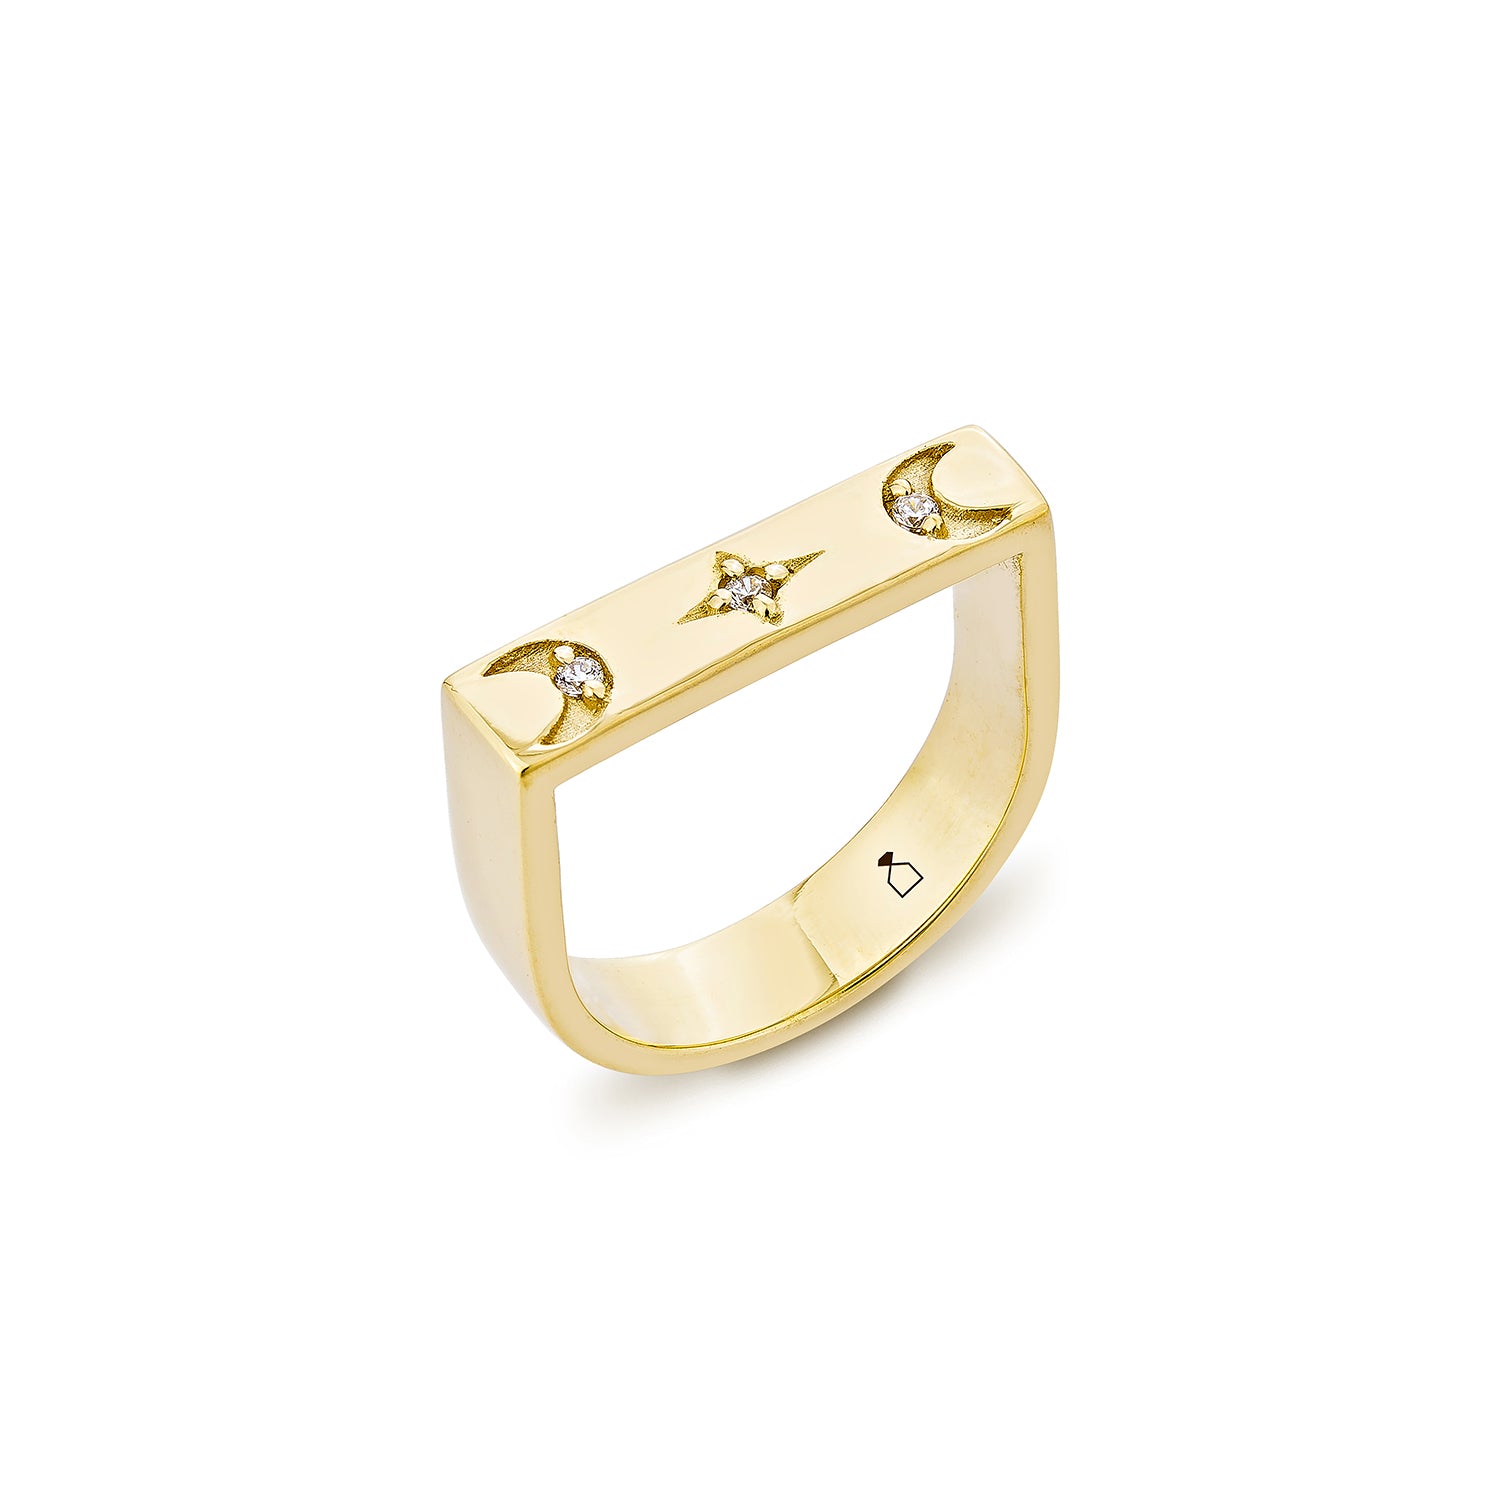 Selene Ring - Gold